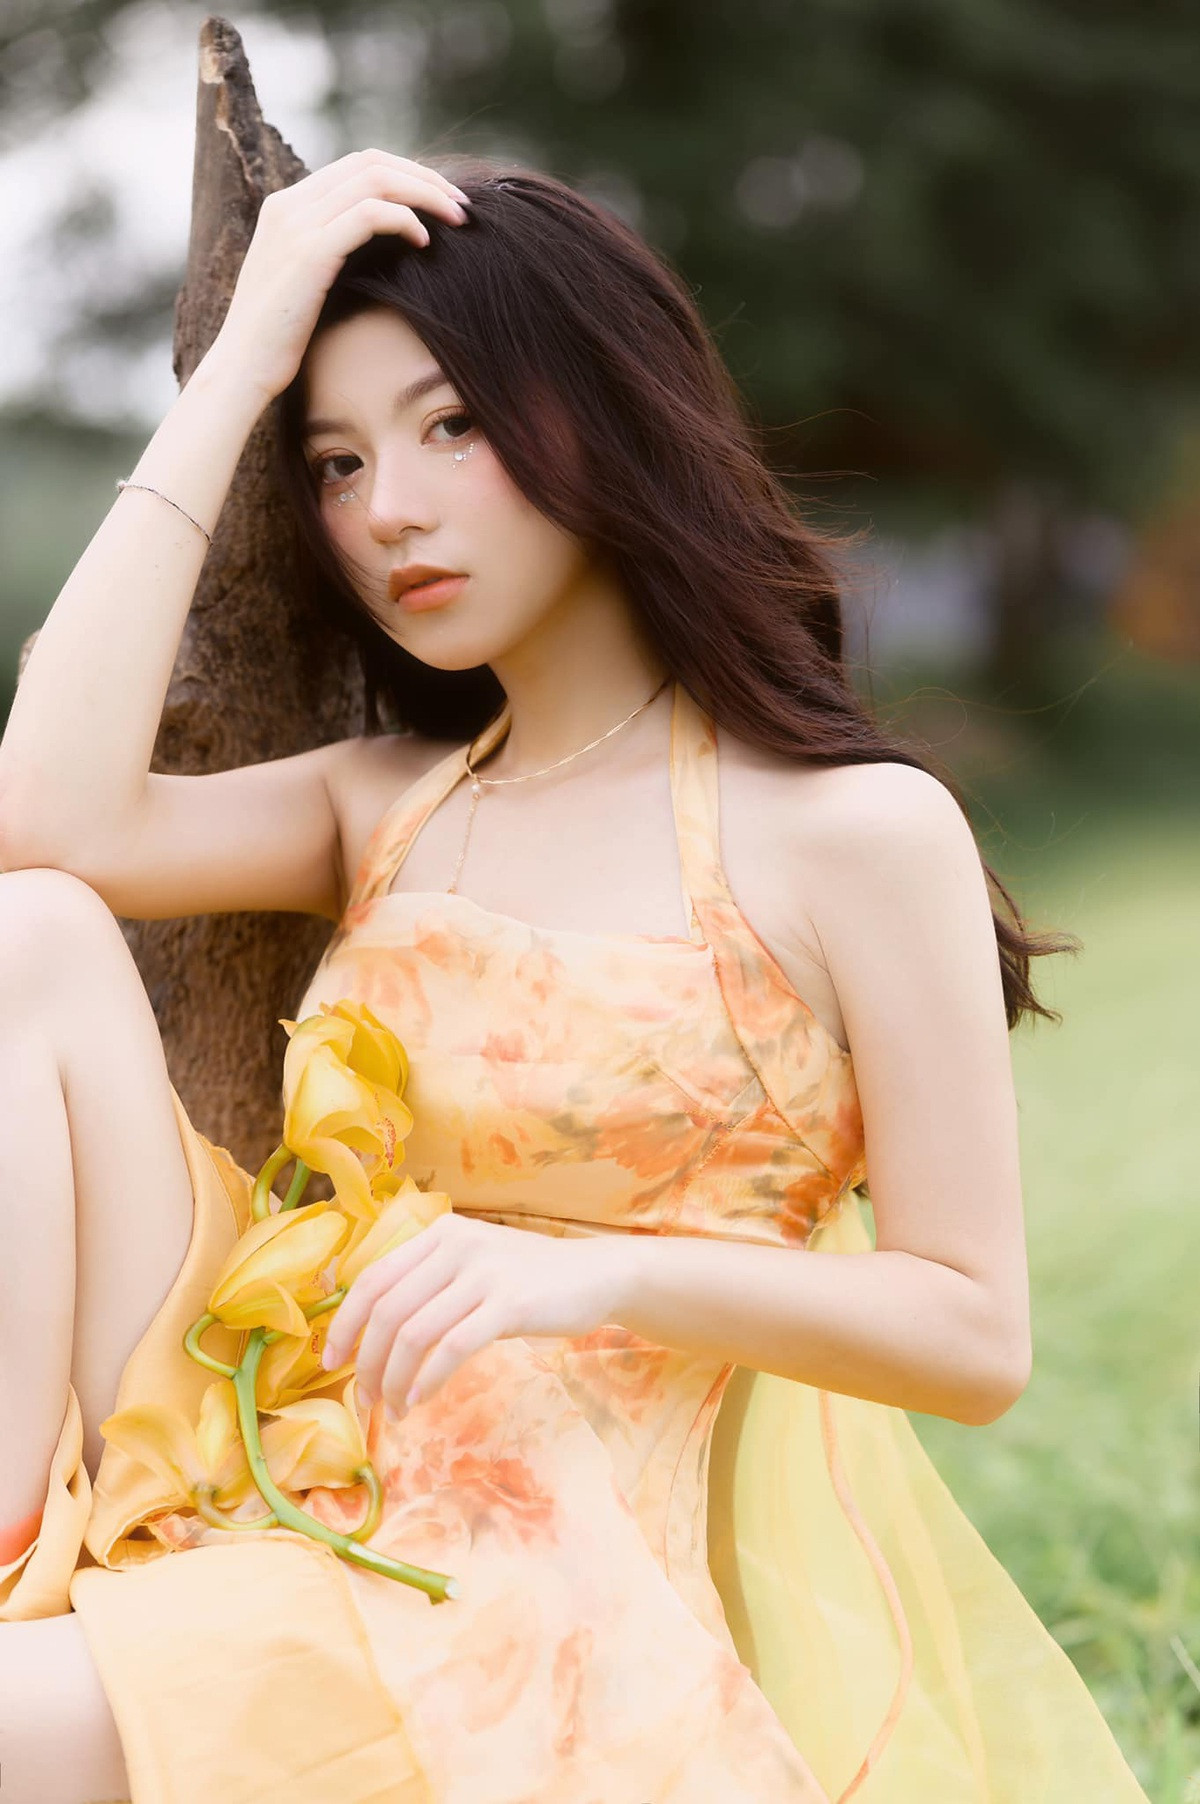 Bộ ảnh khoe vẻ đẹp ngọt ngào của hot girl Lạng Sơn - 11